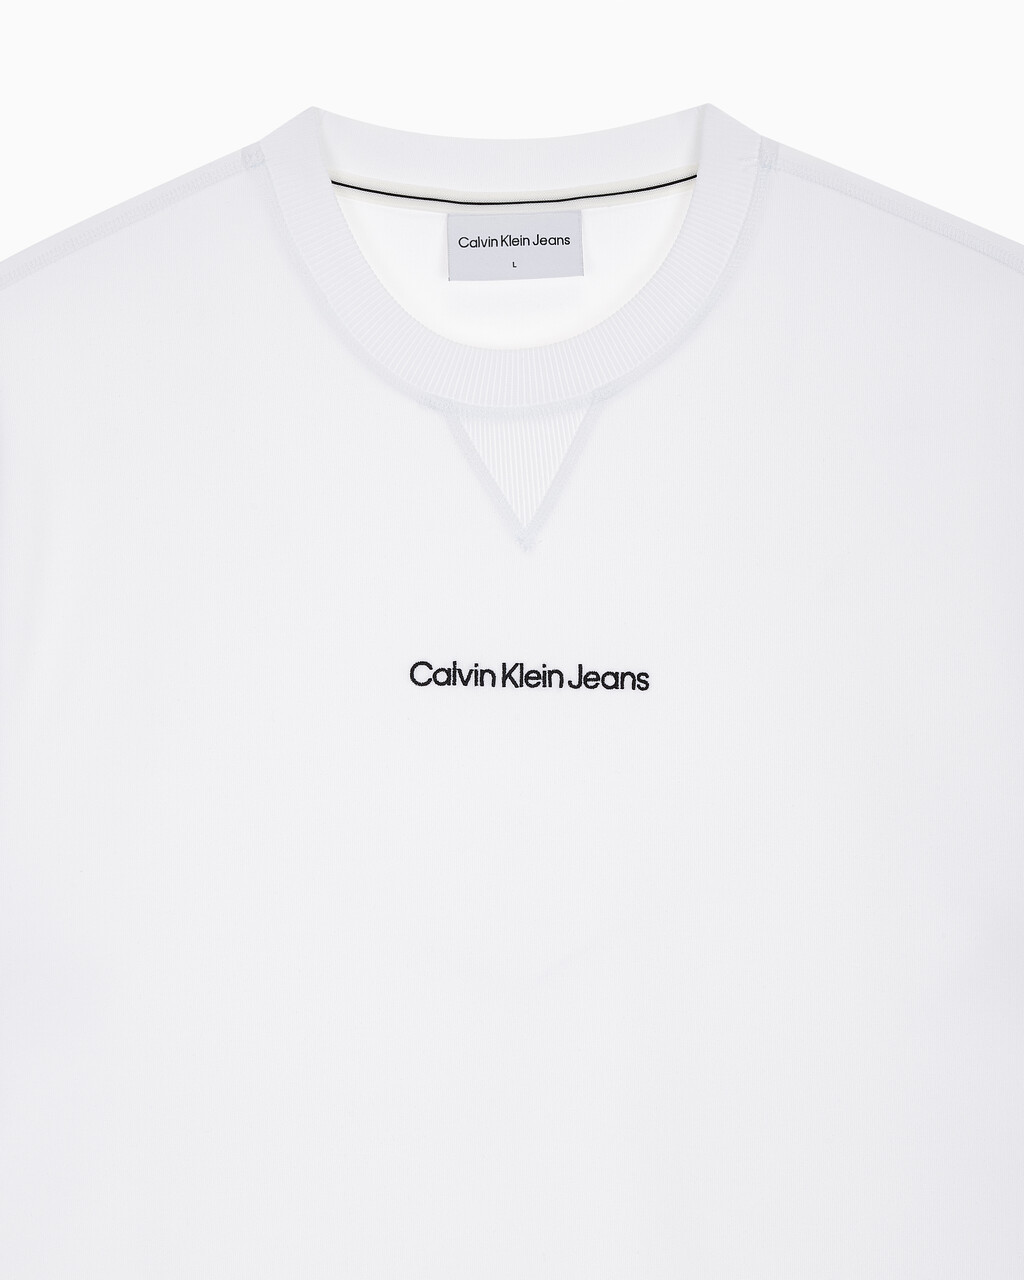 Buy 남성 릴렉스핏 인스티튜셔널 로고 반팔 스웨트셔츠 in color BRIGHT WHITE